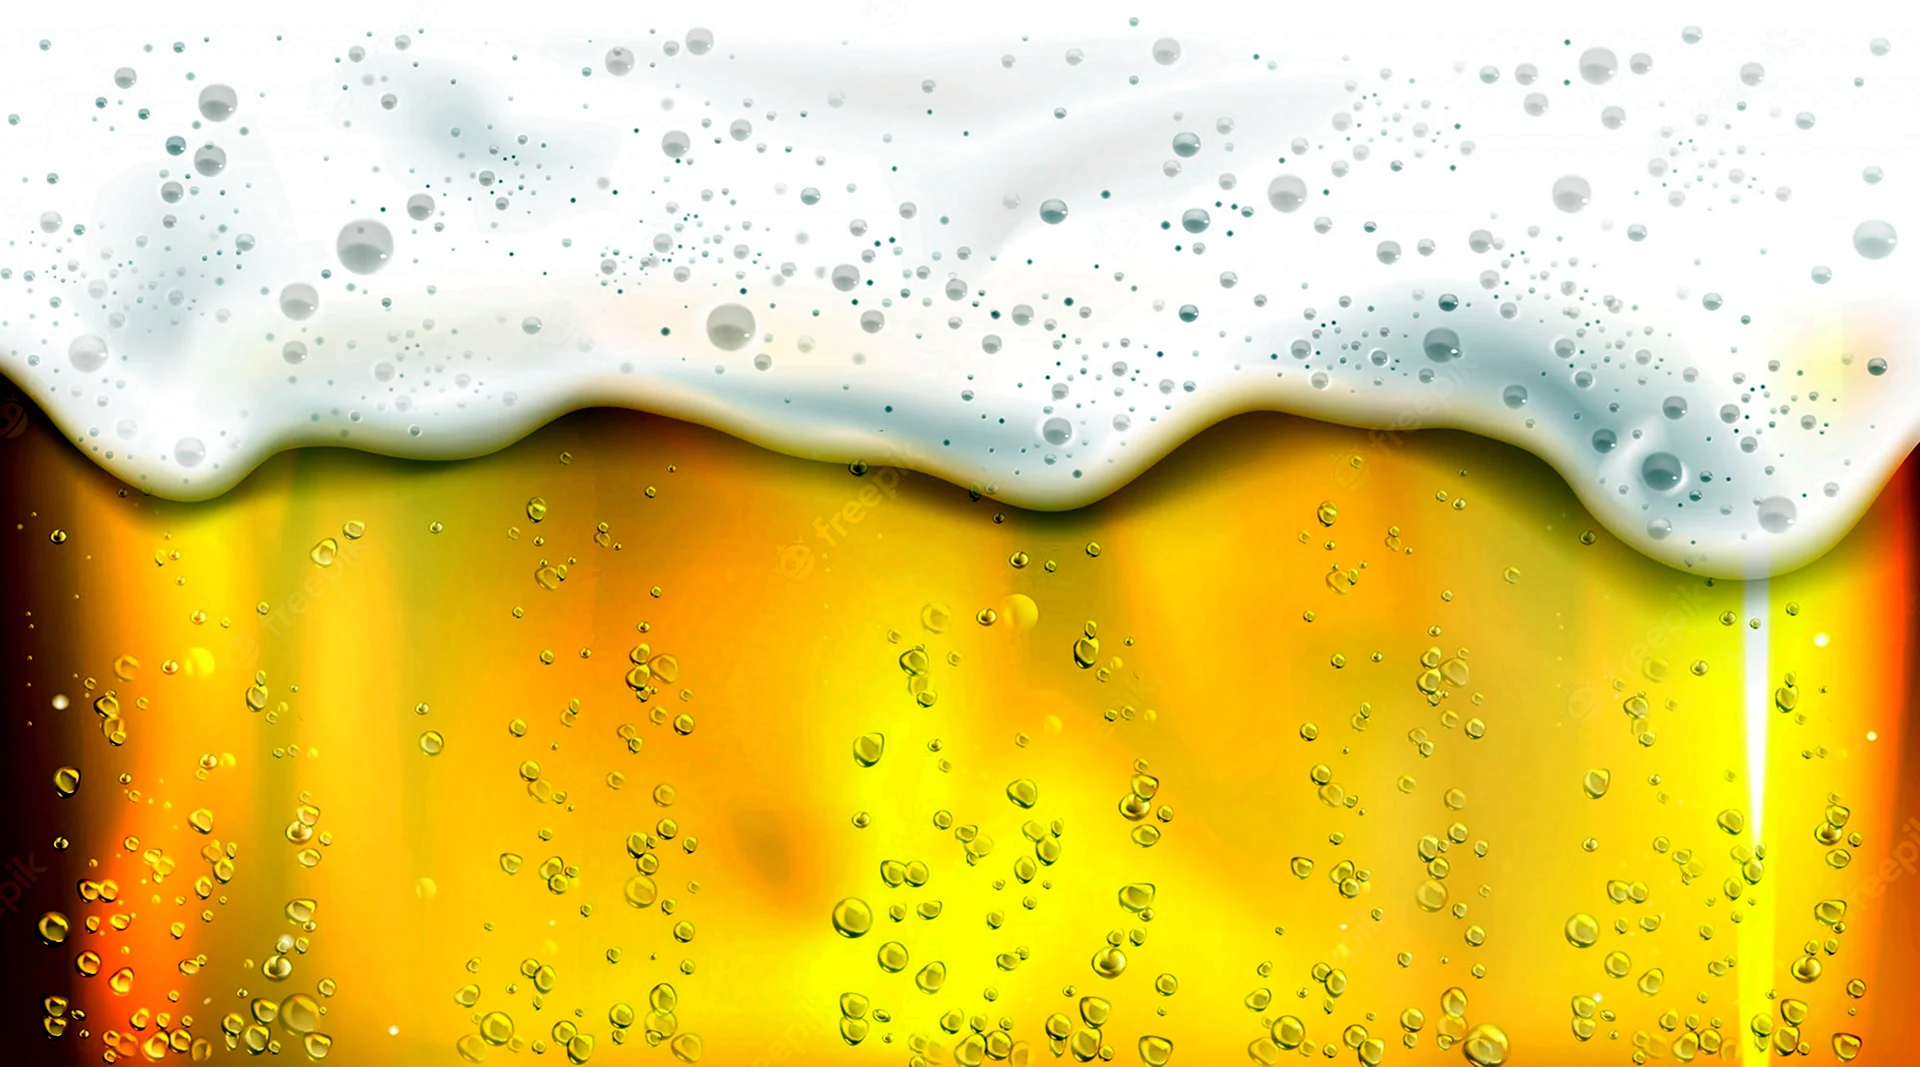 Фон желтый пузырьки пива с пеной рисованный